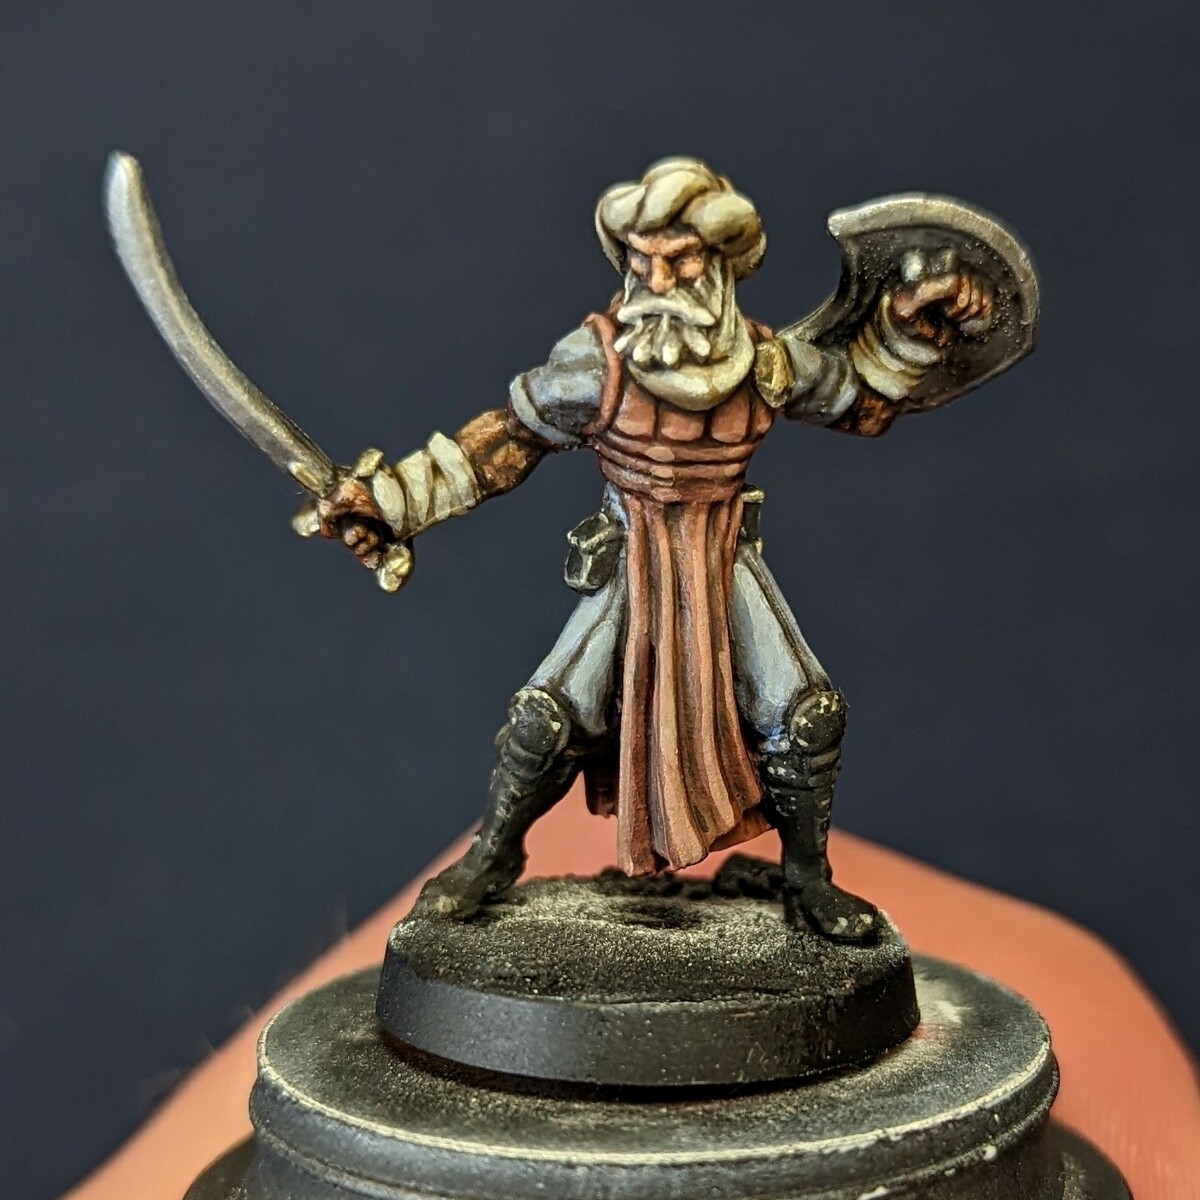 Relicblade Warden of Justice